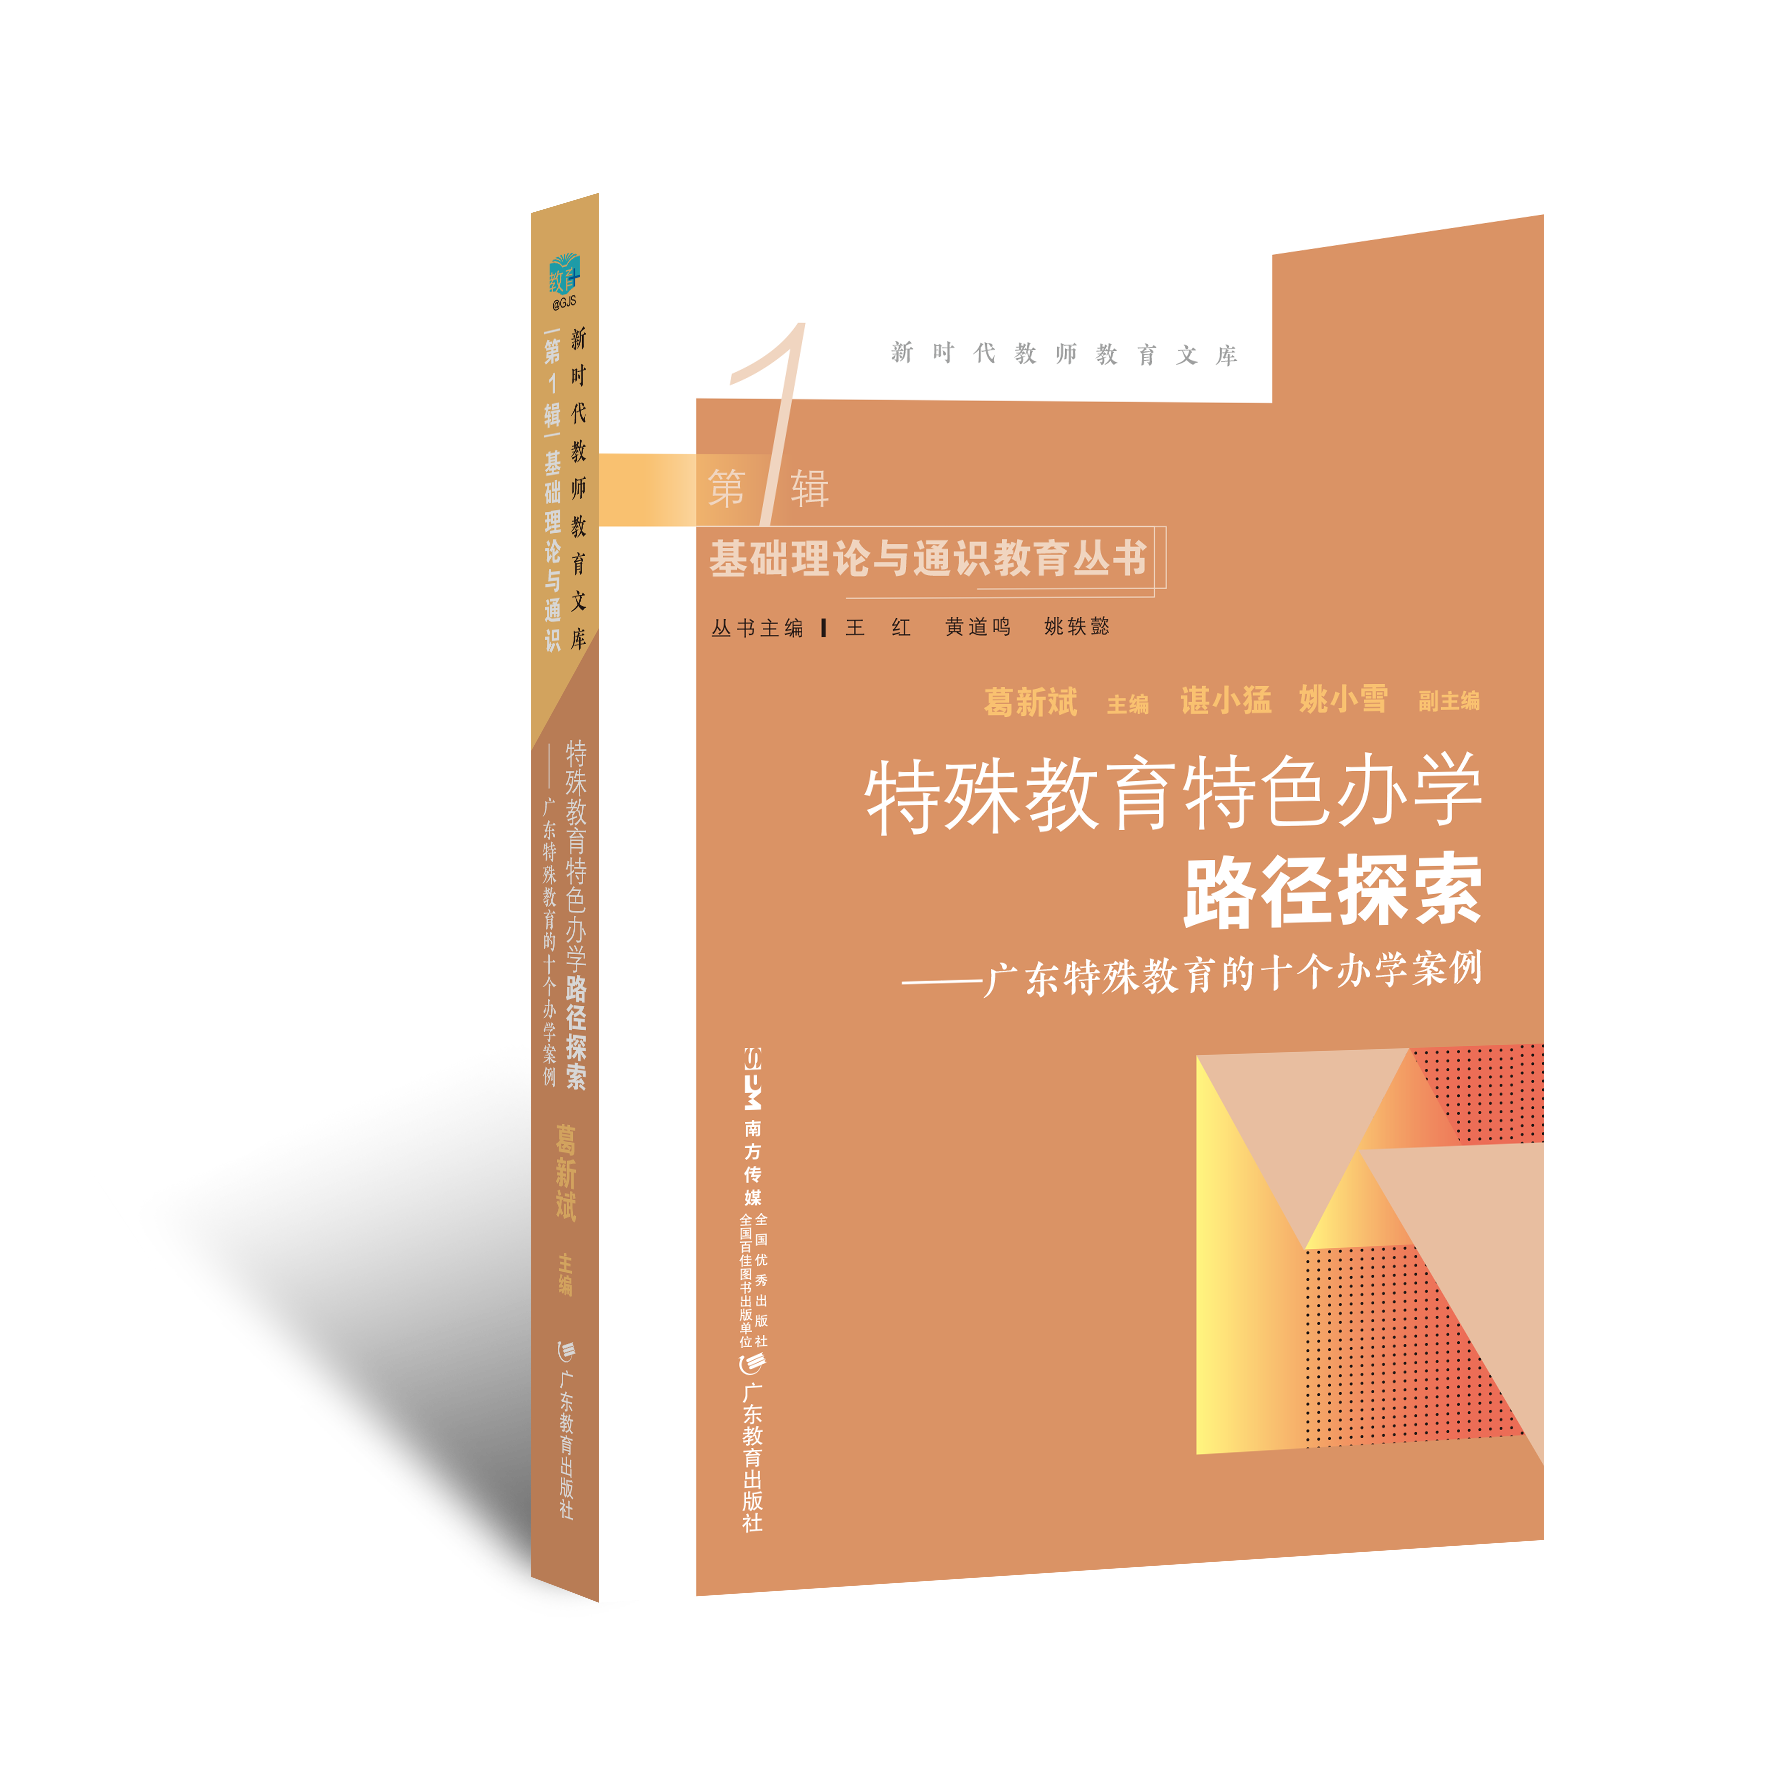 特殊教育特色办学路径探索 : 广东特殊教育的十个办学案例